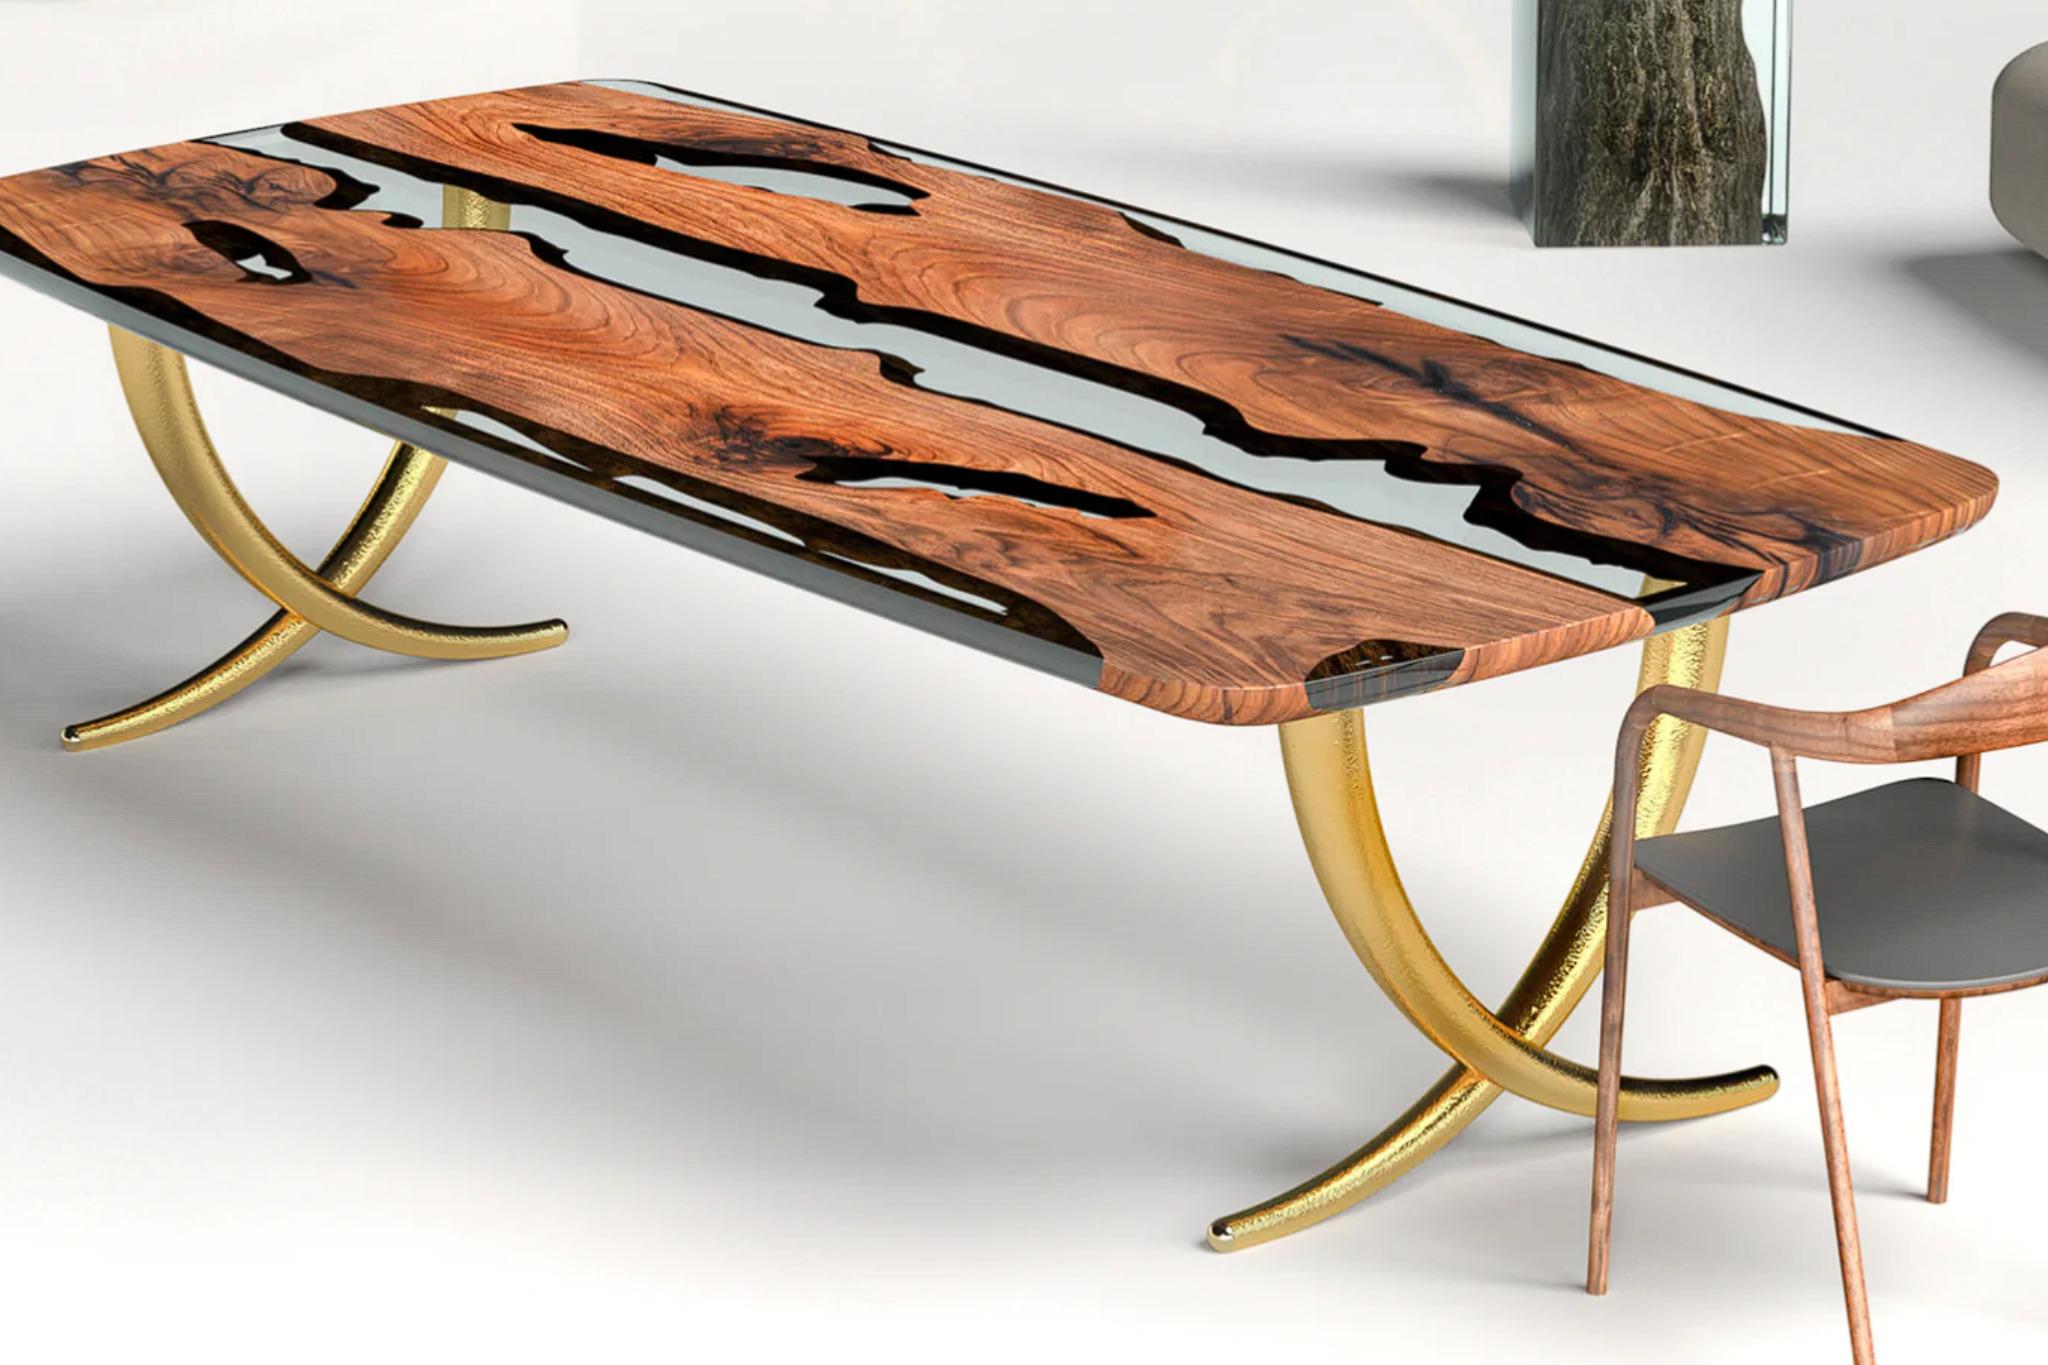 Der Tisch ist aus massivem anatolischen Nussbaumholz gefertigt, das für seine Stärke und Haltbarkeit bekannt ist. 

Was diesen Tisch wirklich einzigartig macht, ist sein Untergestell, das mit rund 40 Tausend Hammerschlägen gefertigt wurde und somit